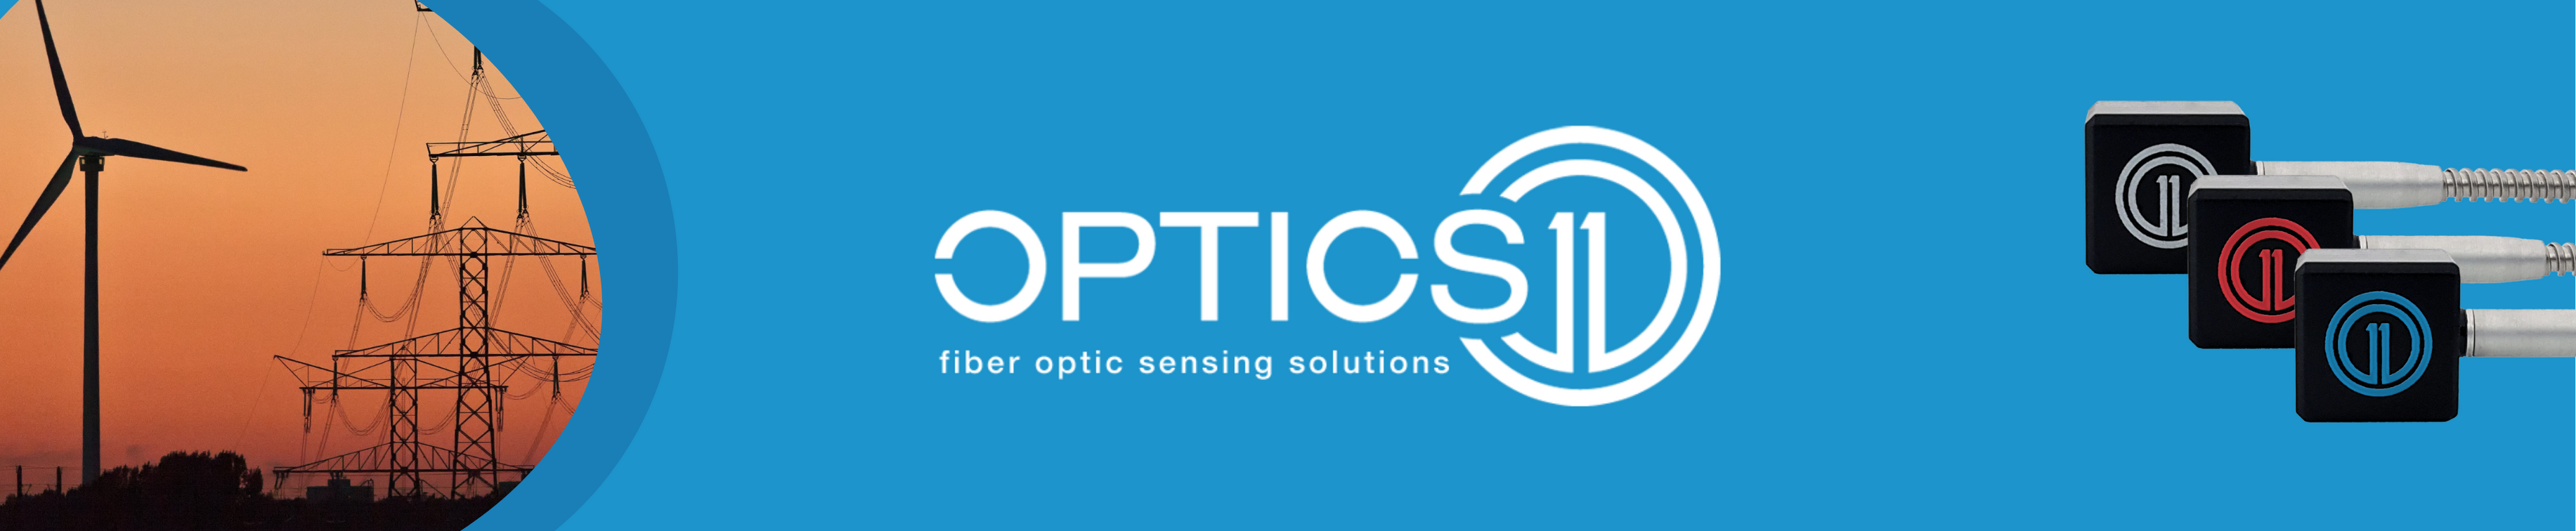 Optics11 - Fiber Optic Sensing Solutions